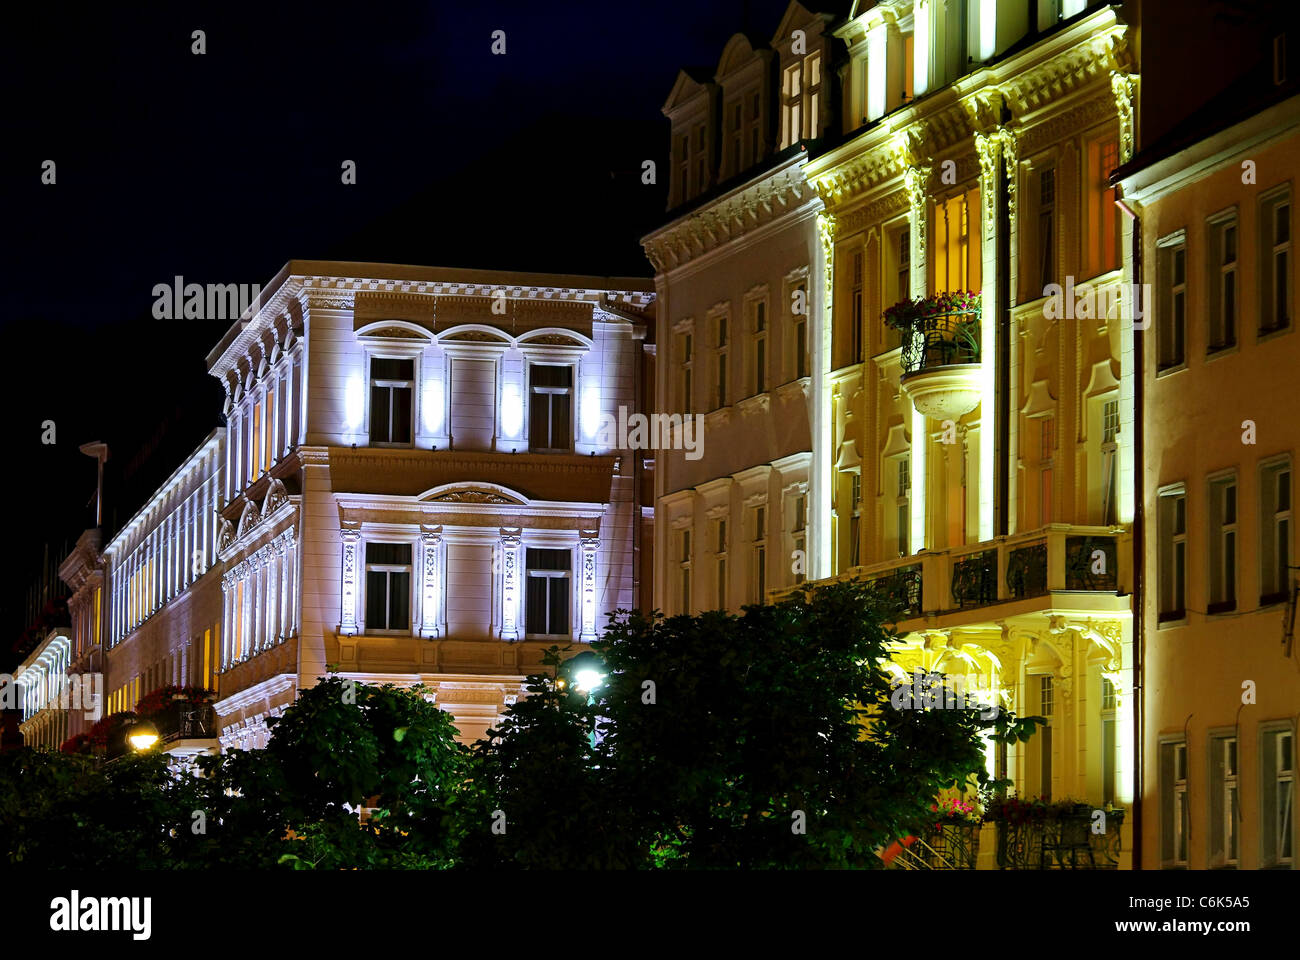 Karlovy Vary Hausfassaden Nacht - Karlovy Vary Fassade bei Nacht 01 Stockfoto